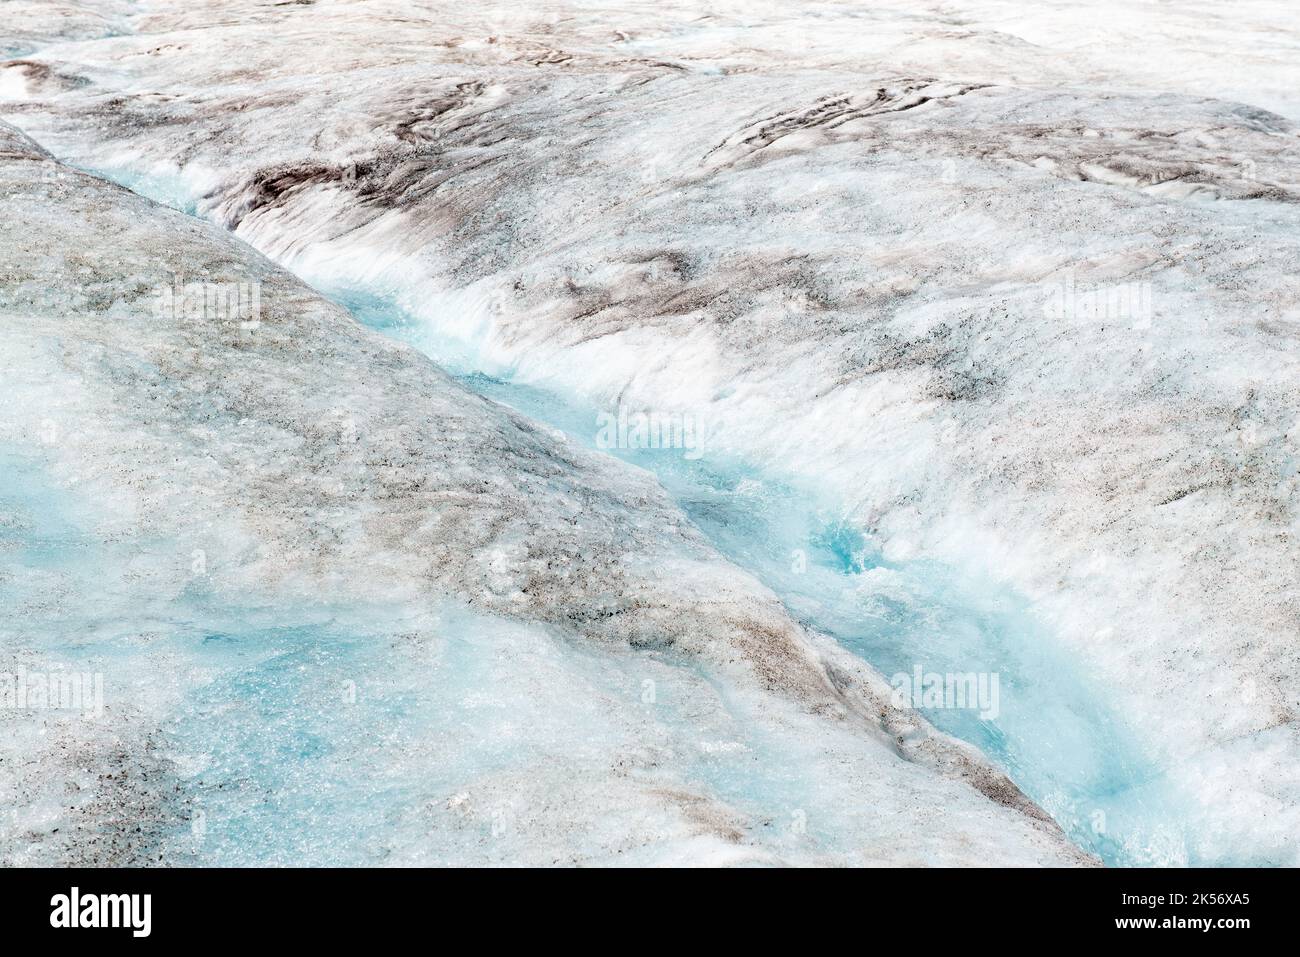 Fondendo il ghiacciaio Athabasca con un piccolo fiume nel ghiaccio a causa del cambiamento climatico, il parco nazionale di Jasper, Alberta, Canada. Foto Stock